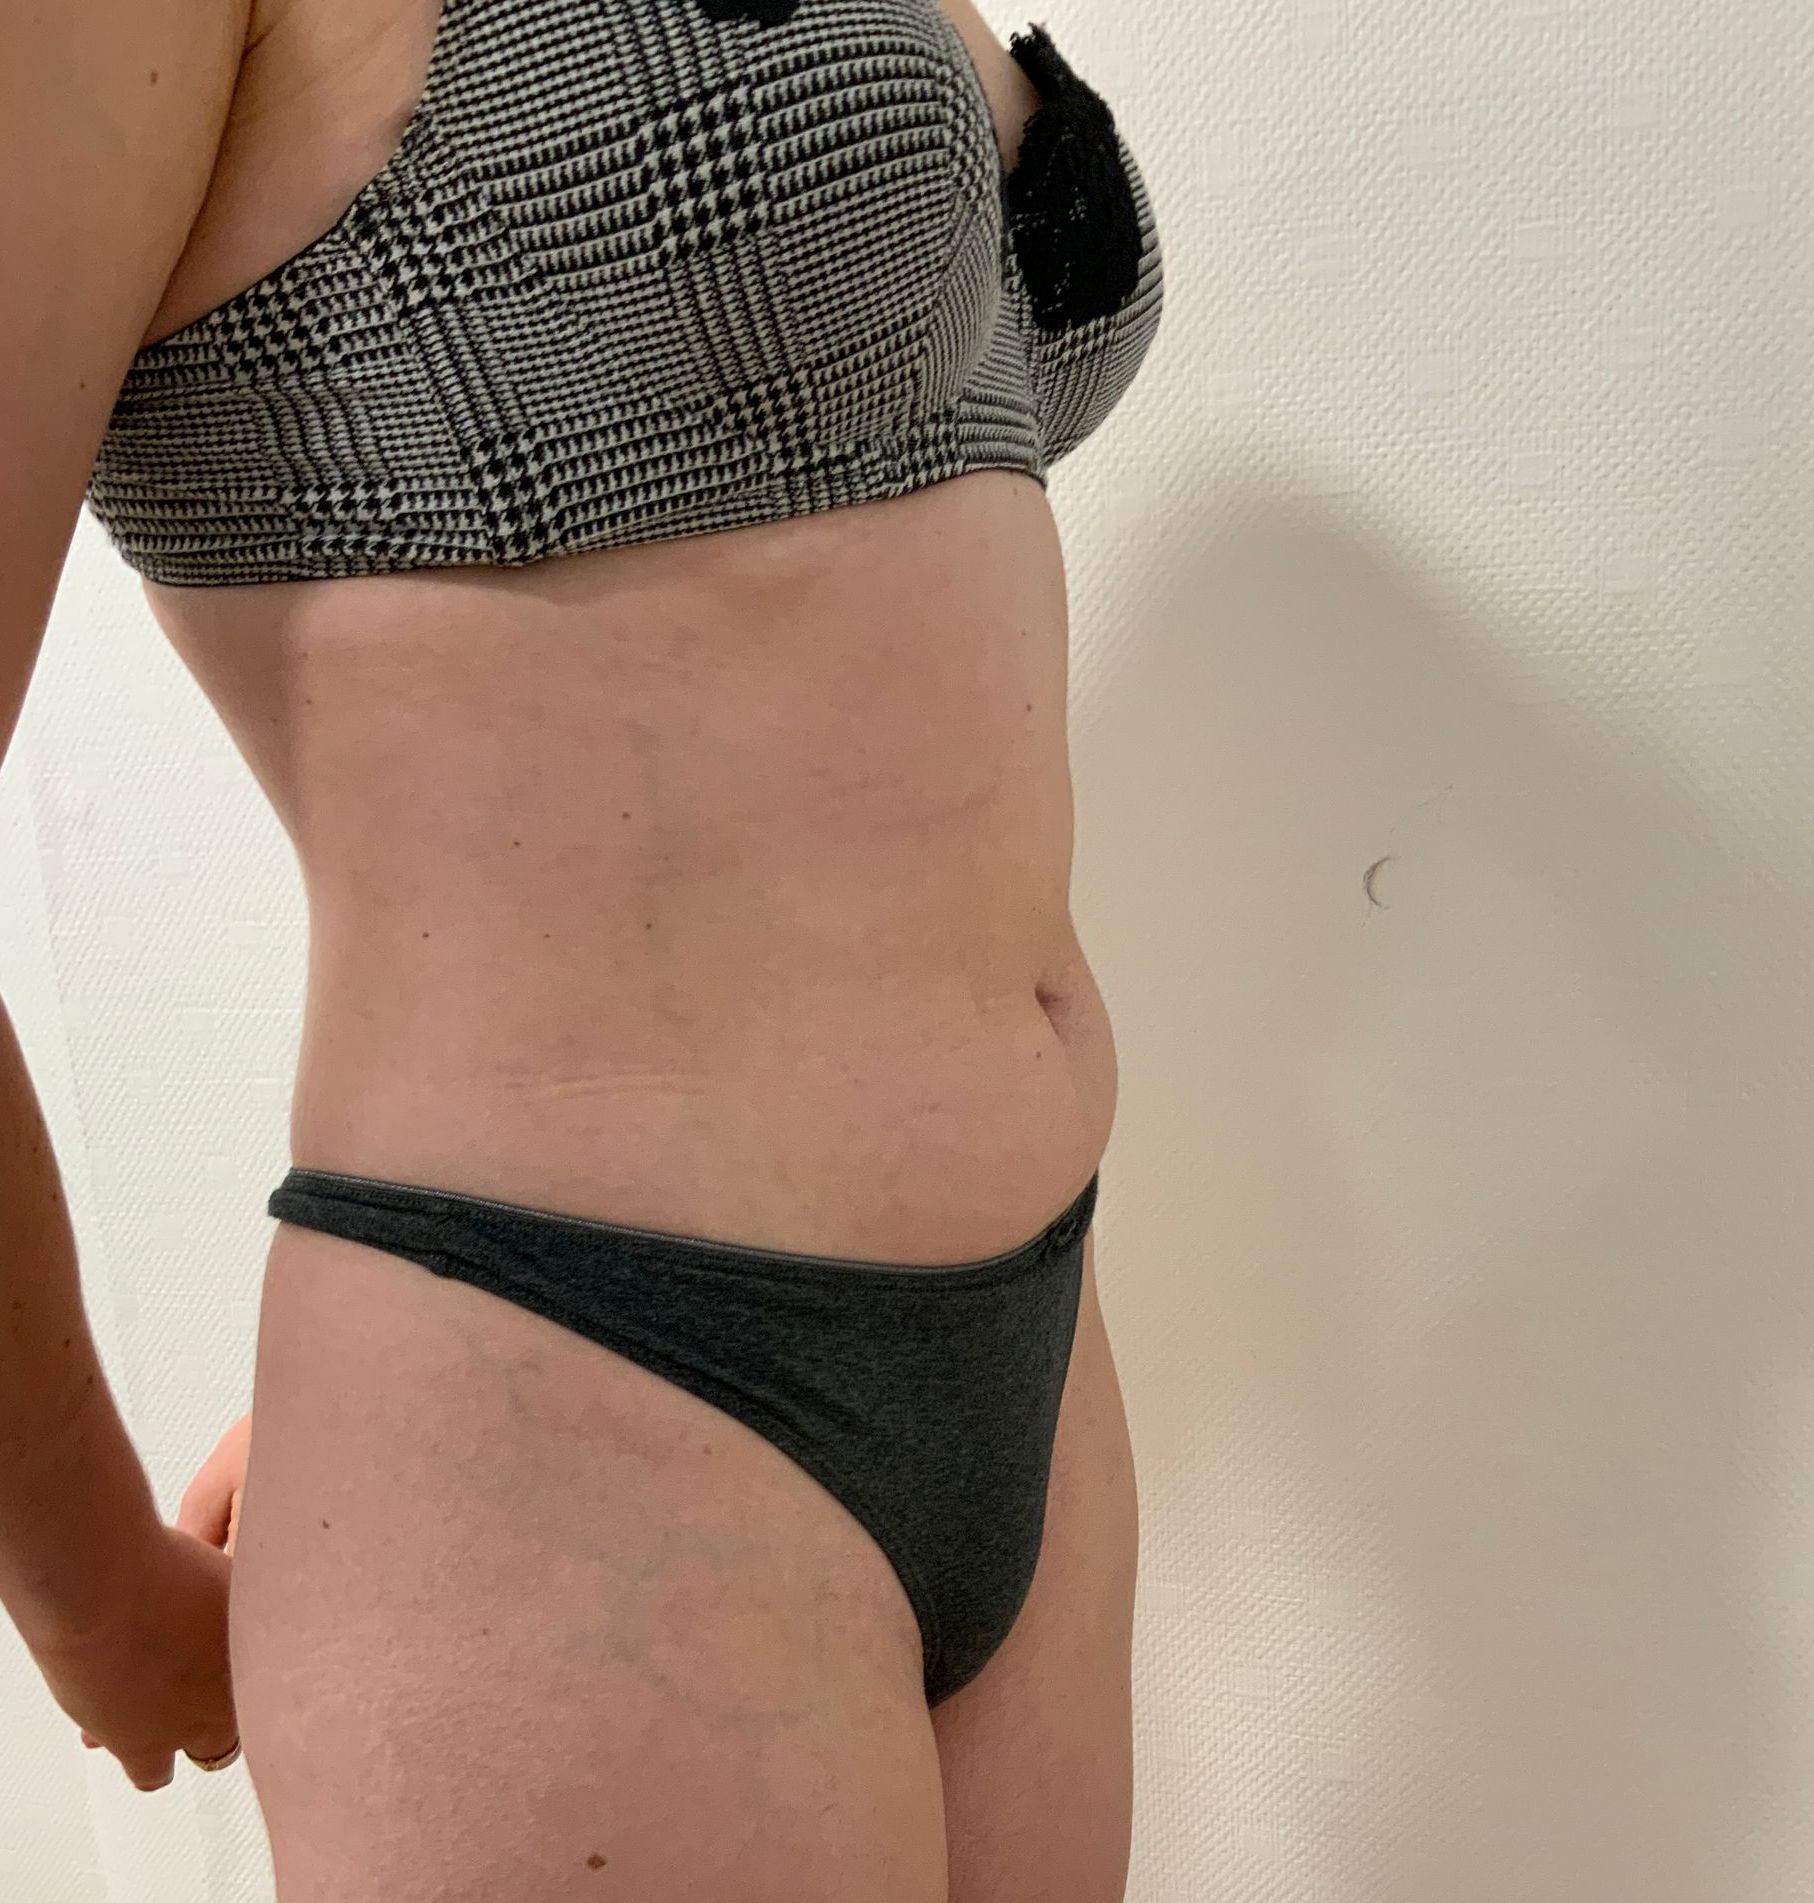 Femme en lingerie liposuccion du ventre après vue de profil